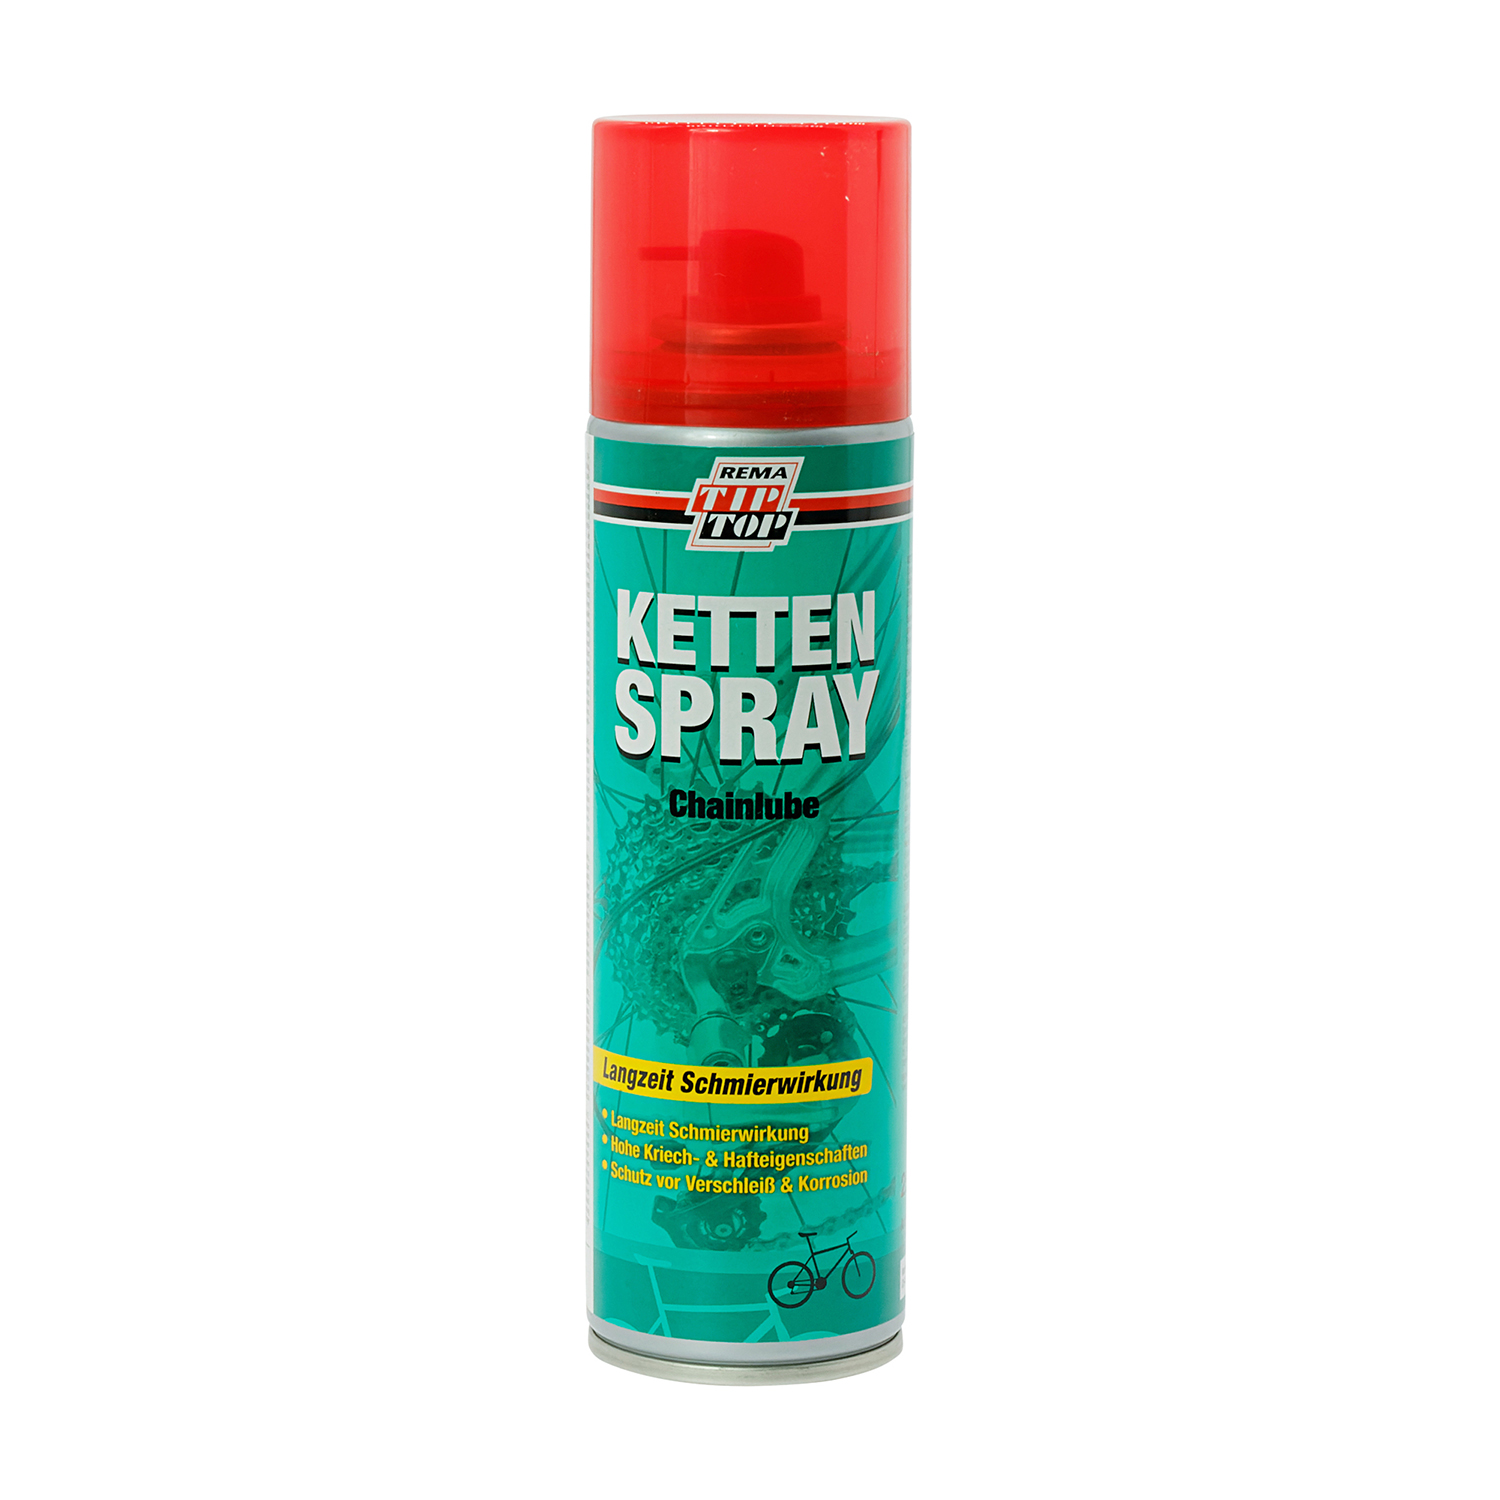 Ketten-Spray: TIP TOP Kettenspray 250 ml Sprühdose